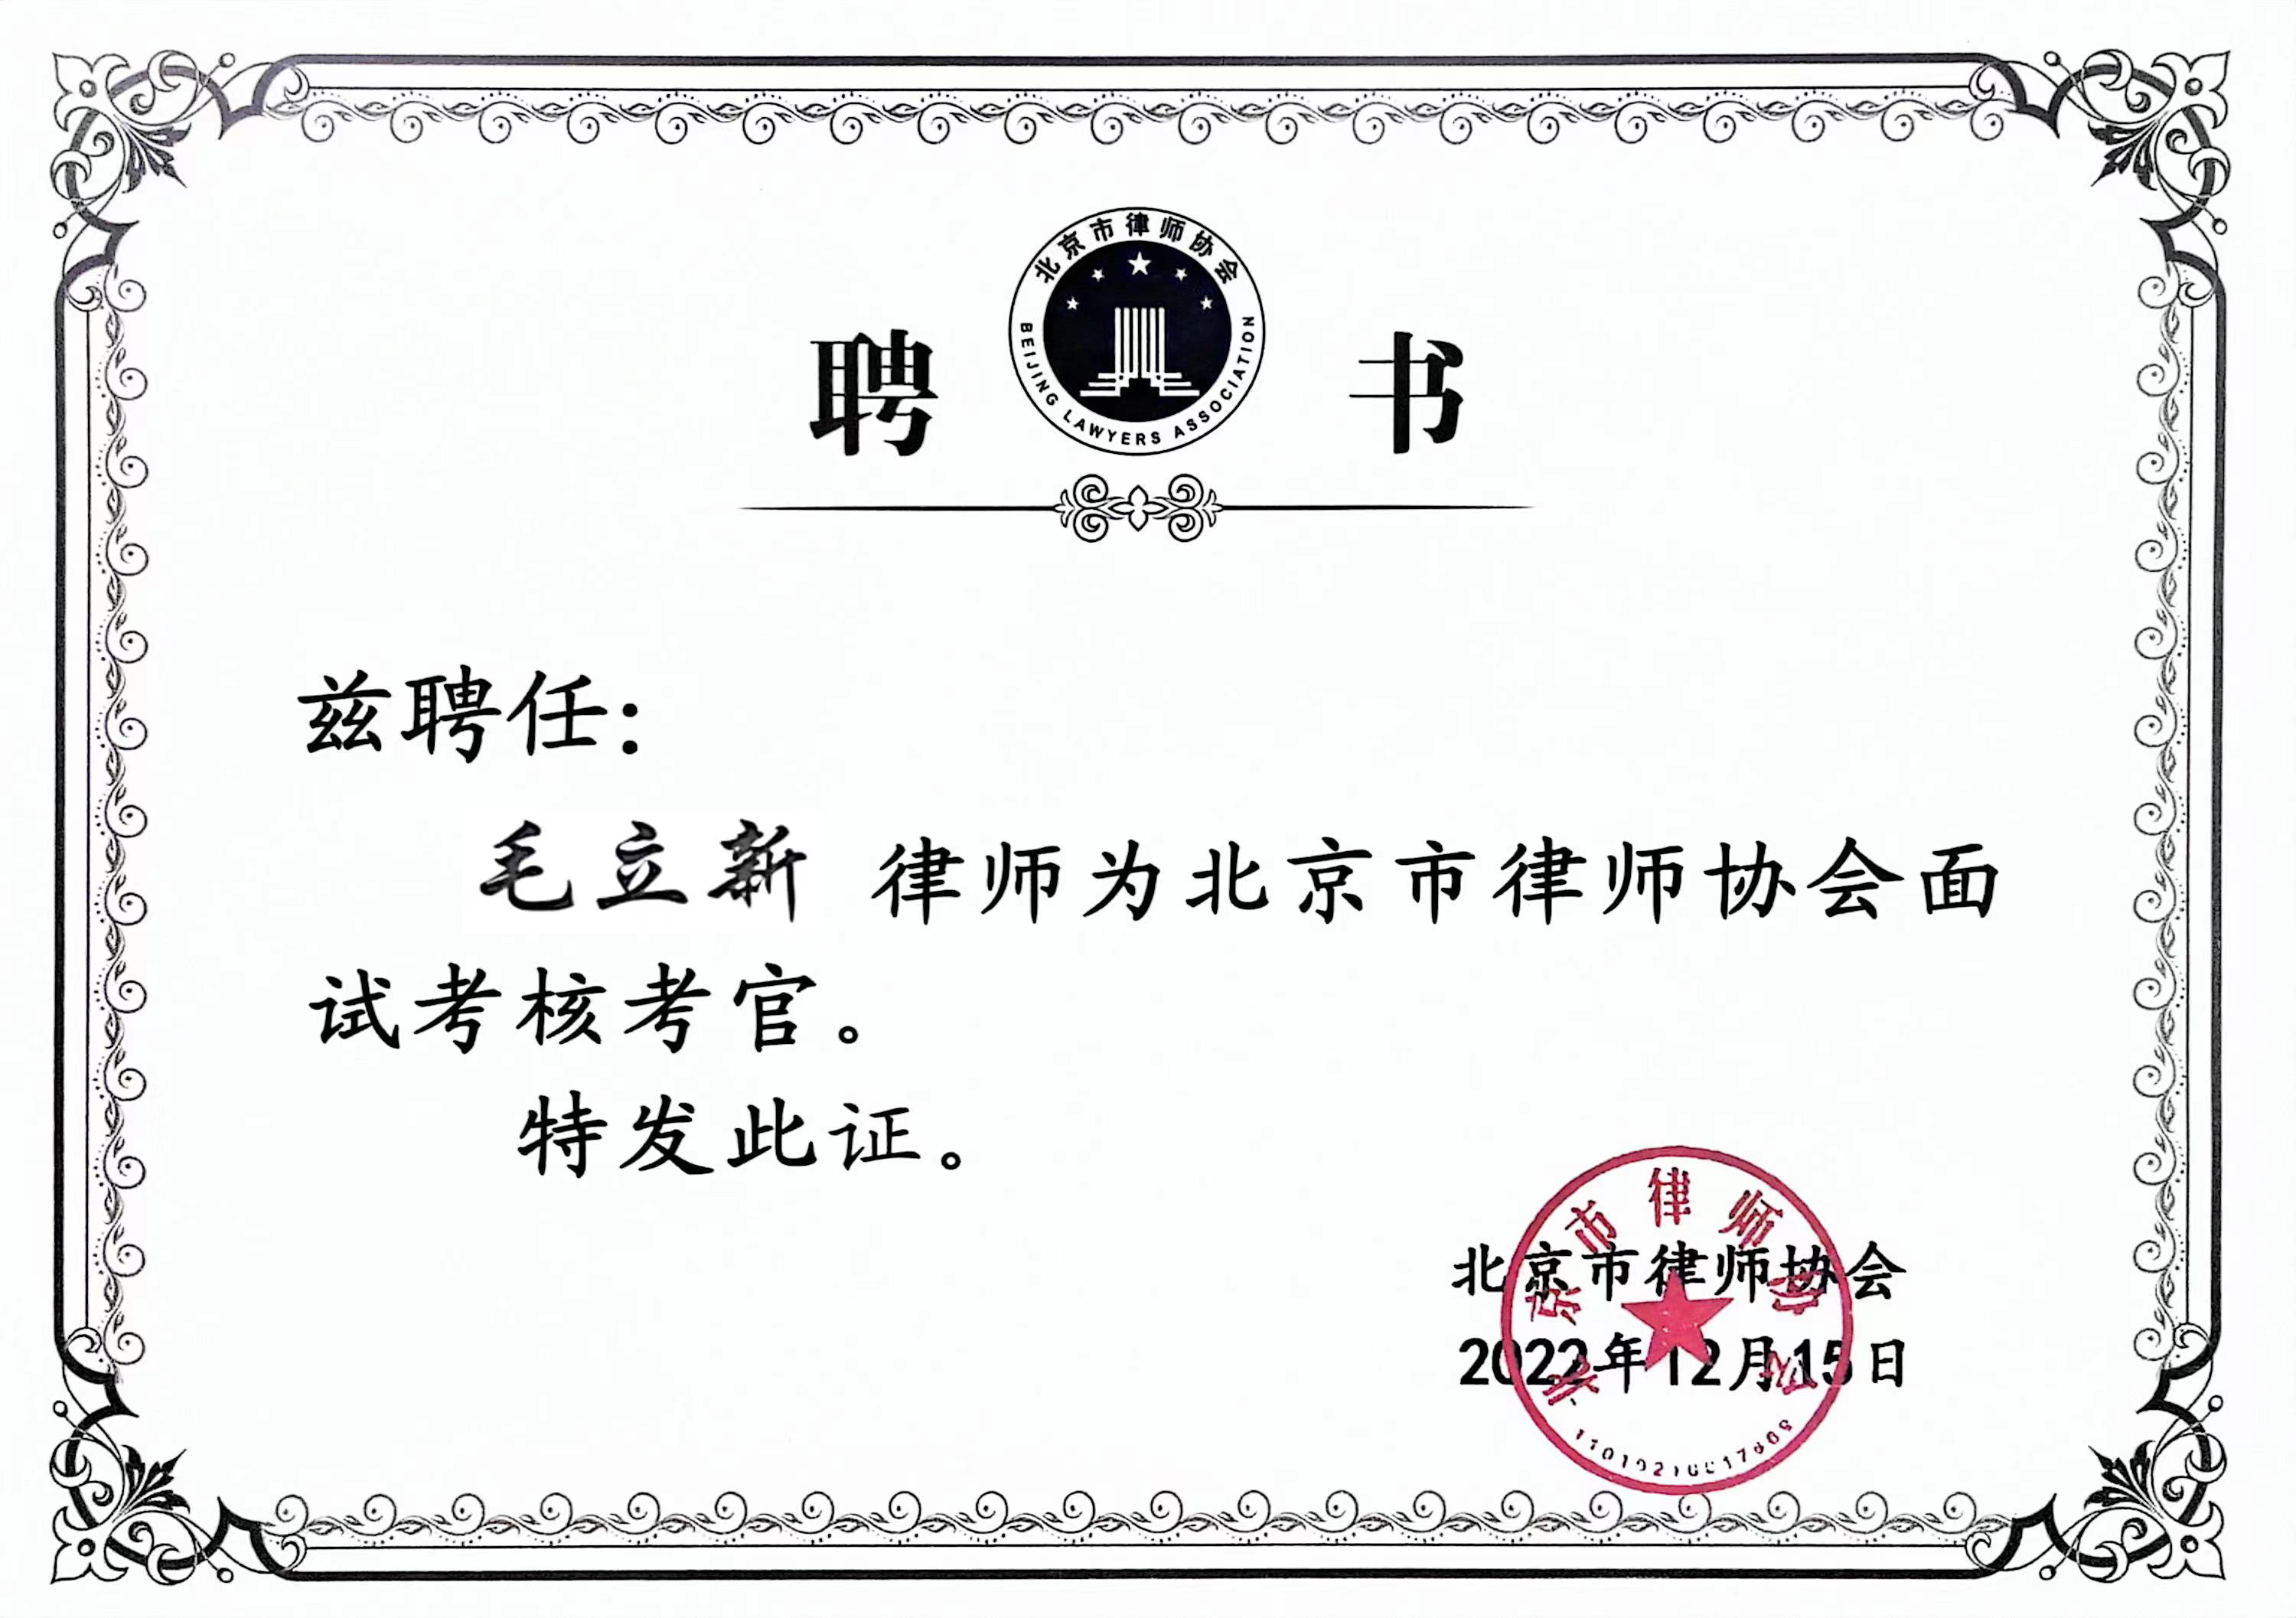 毛立新律师受聘为北京市律师协会“申请律师执业人员考官”